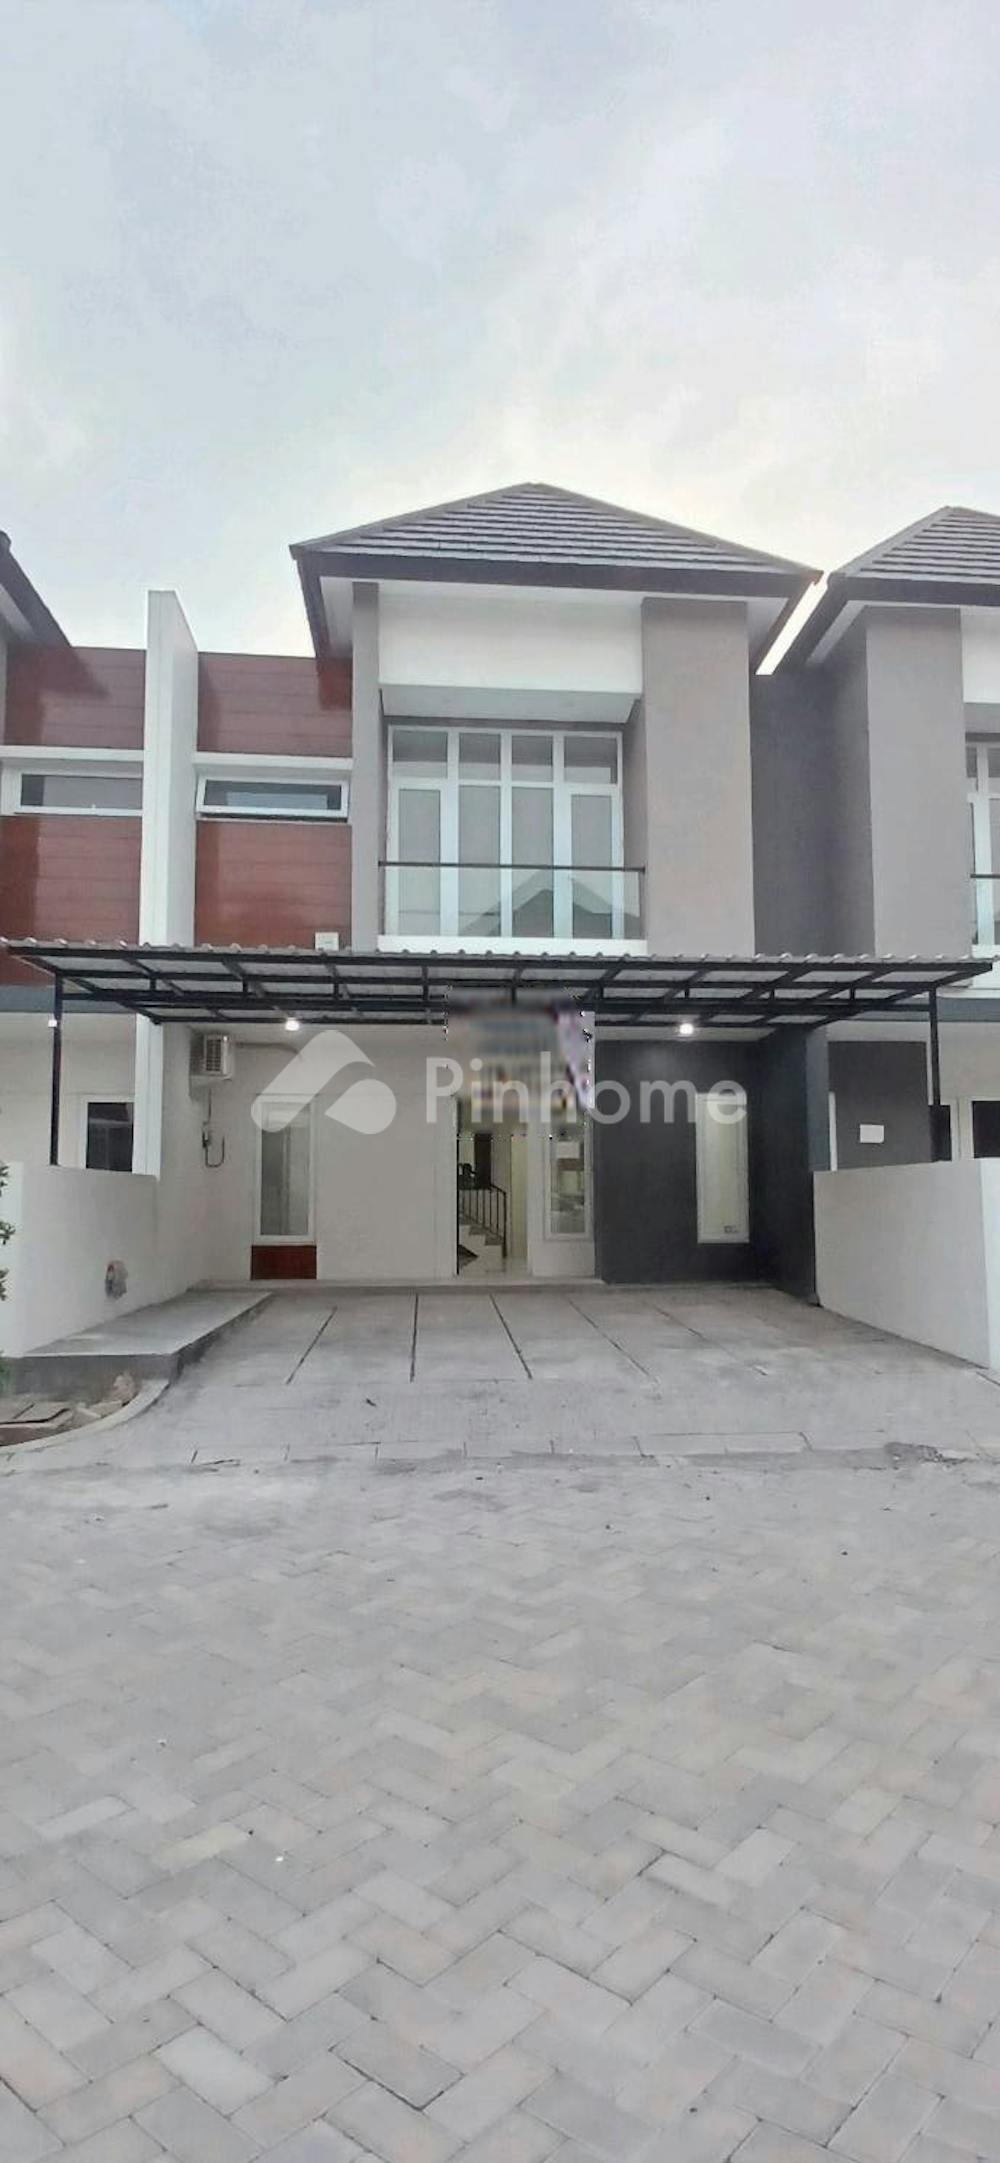 Disewakan Rumah Tengah Kota Full Furnished di Perumahan Muriara Arteri Regency Rp65 Juta/tahun | Pinhome